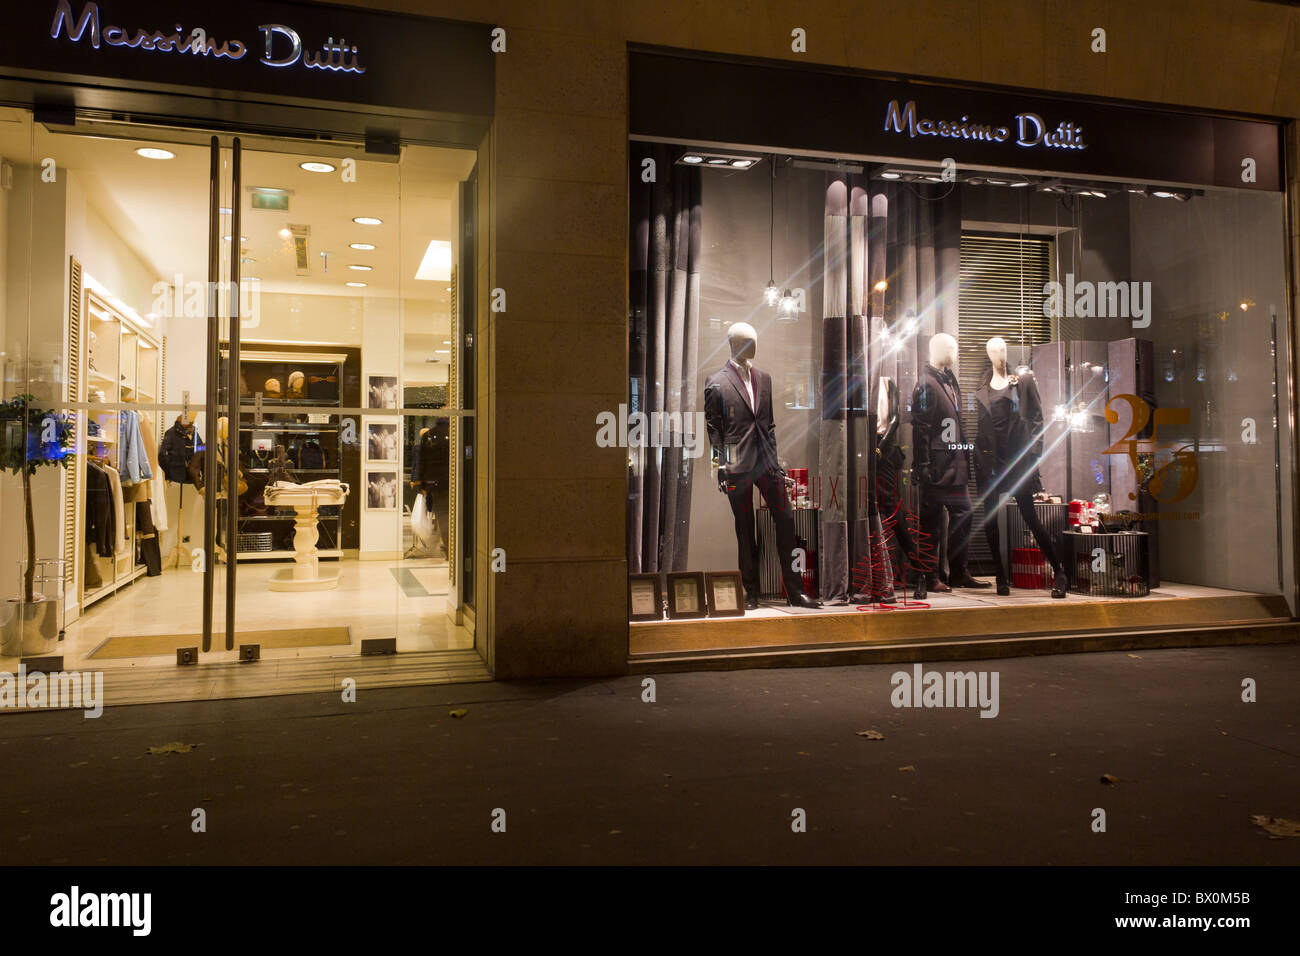 Massimo Dutti Boutique Discount Compare, 41% OFF | evanstoncinci.org